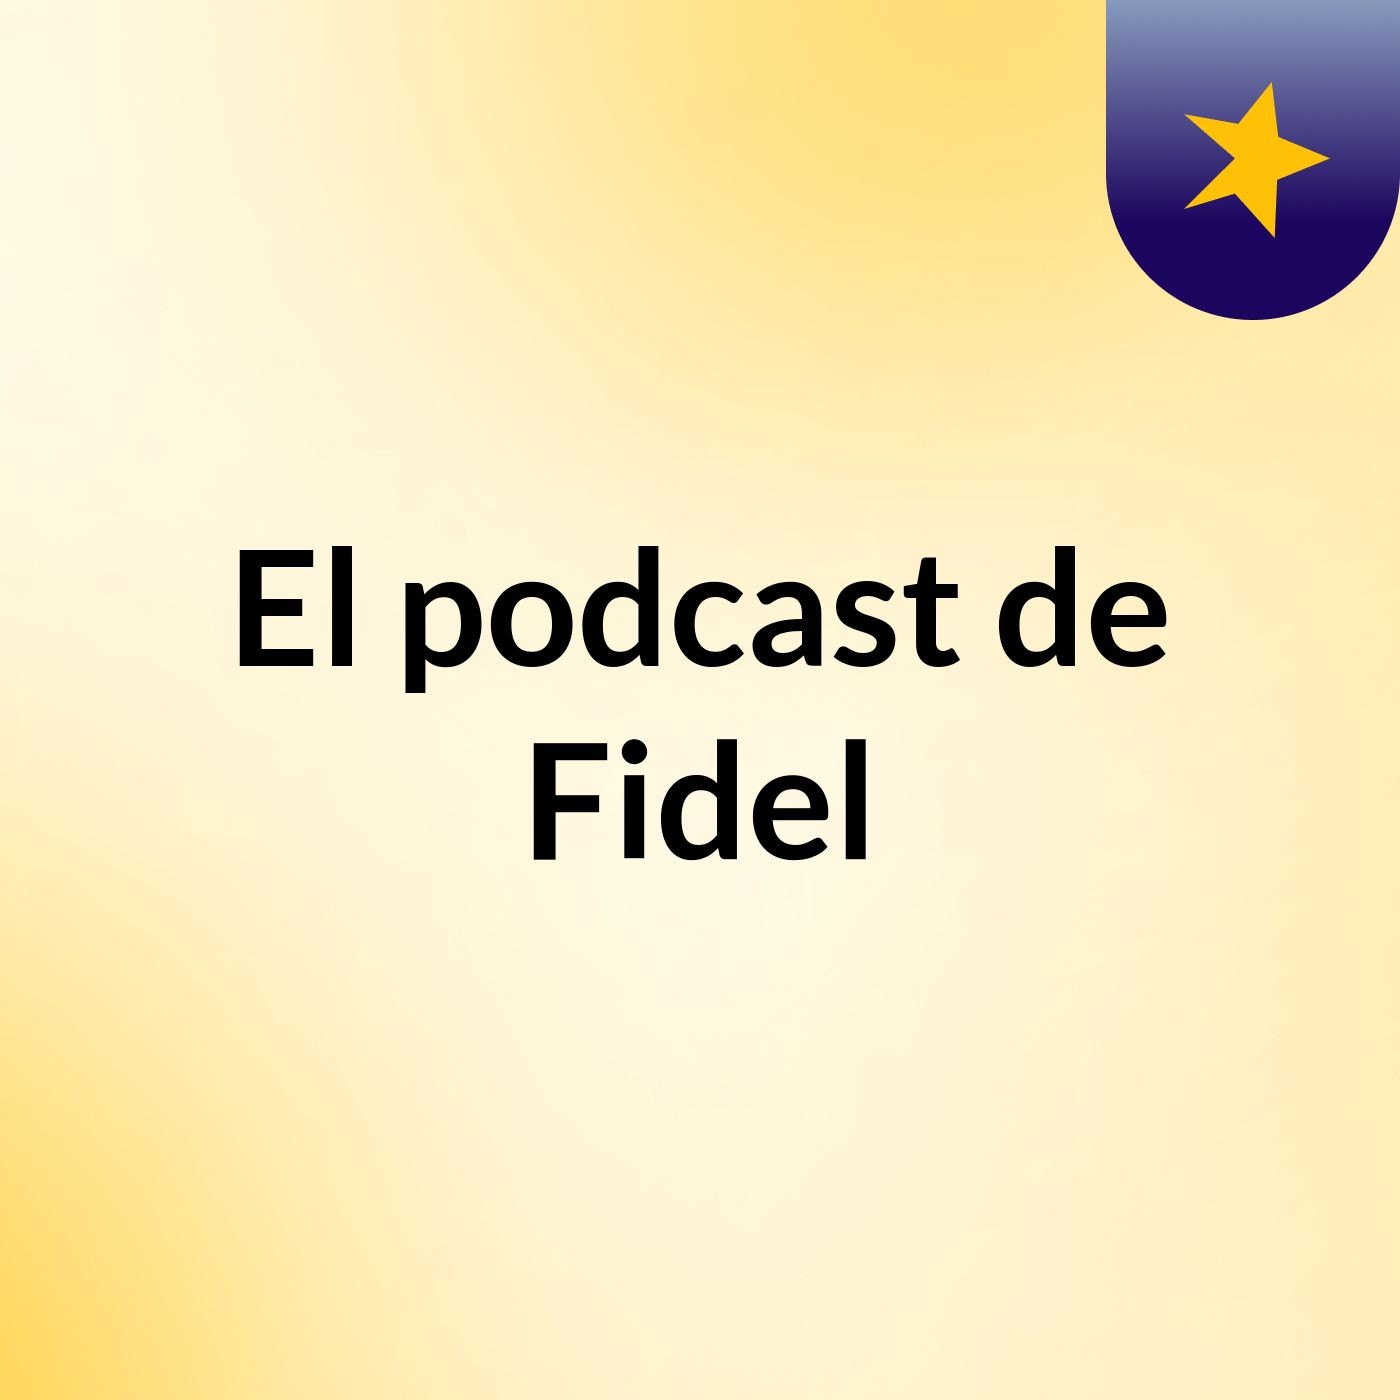 El podcast de Fidel